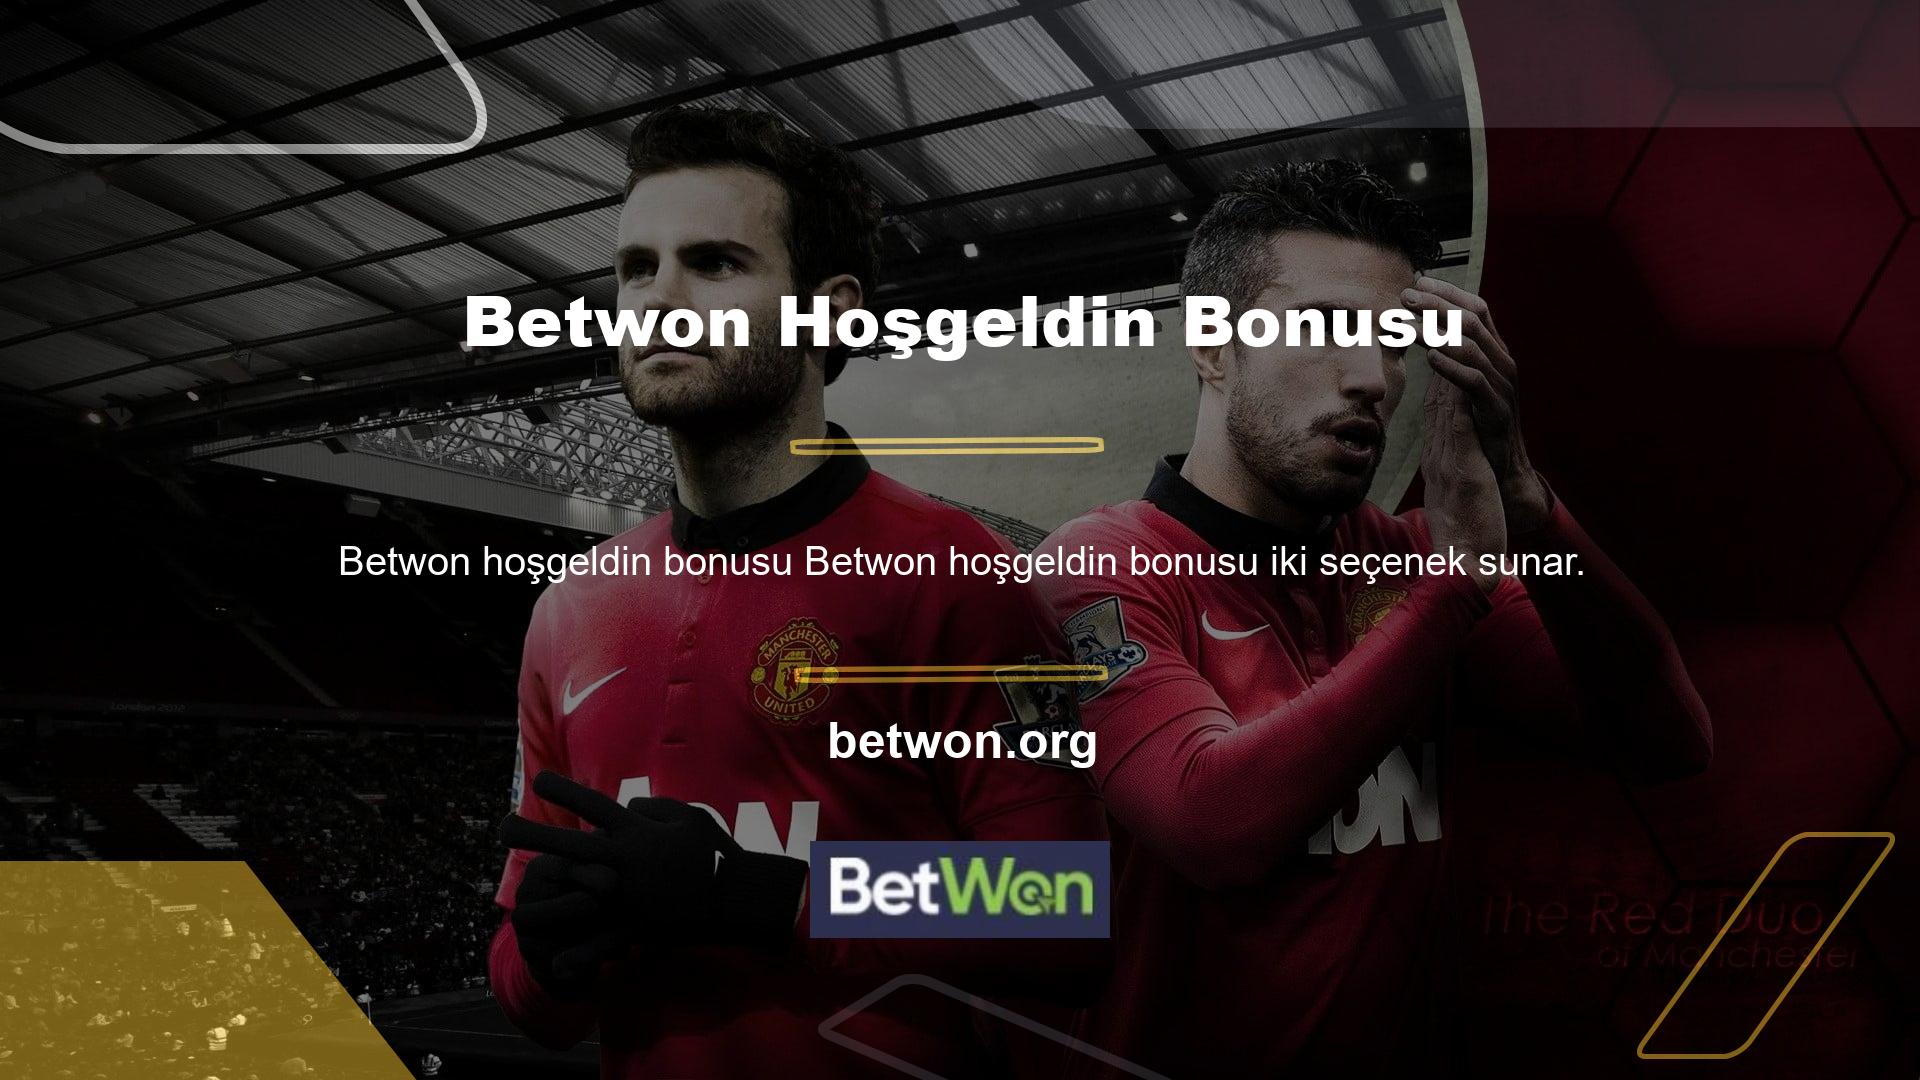 Casino oyunlarını seviyorsanız Betwon Casino hoşgeldin bonusunu, spor bahislerini seviyorsanız Betwon Sports hoşgeldin bonusunu kullanabilirsiniz